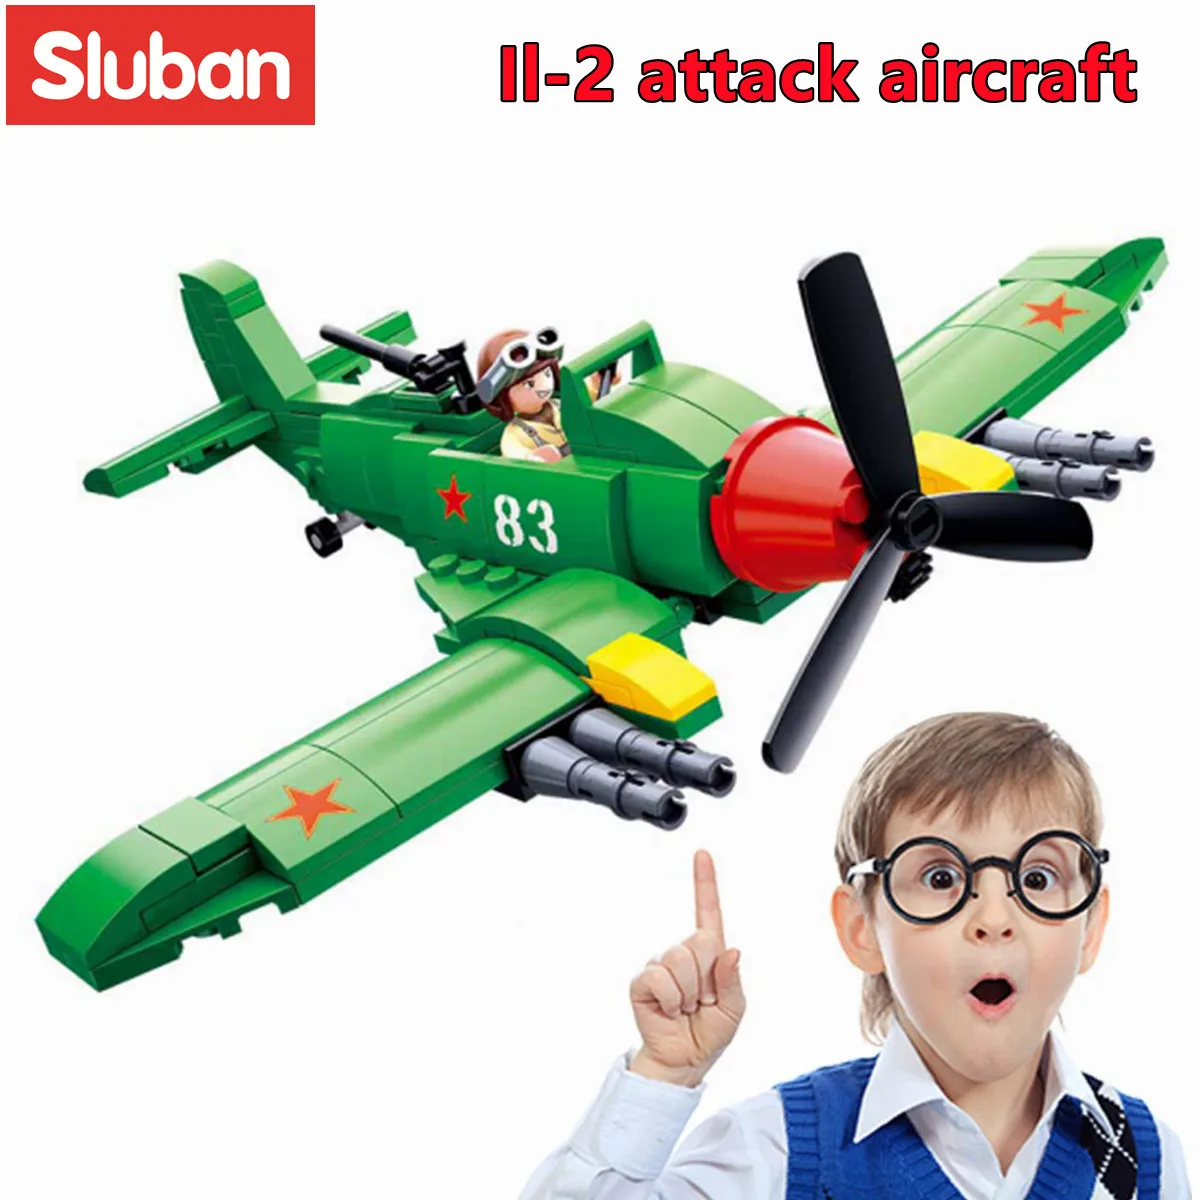 

Конструктор Sluban, игрушки, военная Вторая мировая война, Ilyushin II-2 Fighter Jet, 170 деталей, кирпичи B0683, атакующий самолет, подходит для ведущих брендов